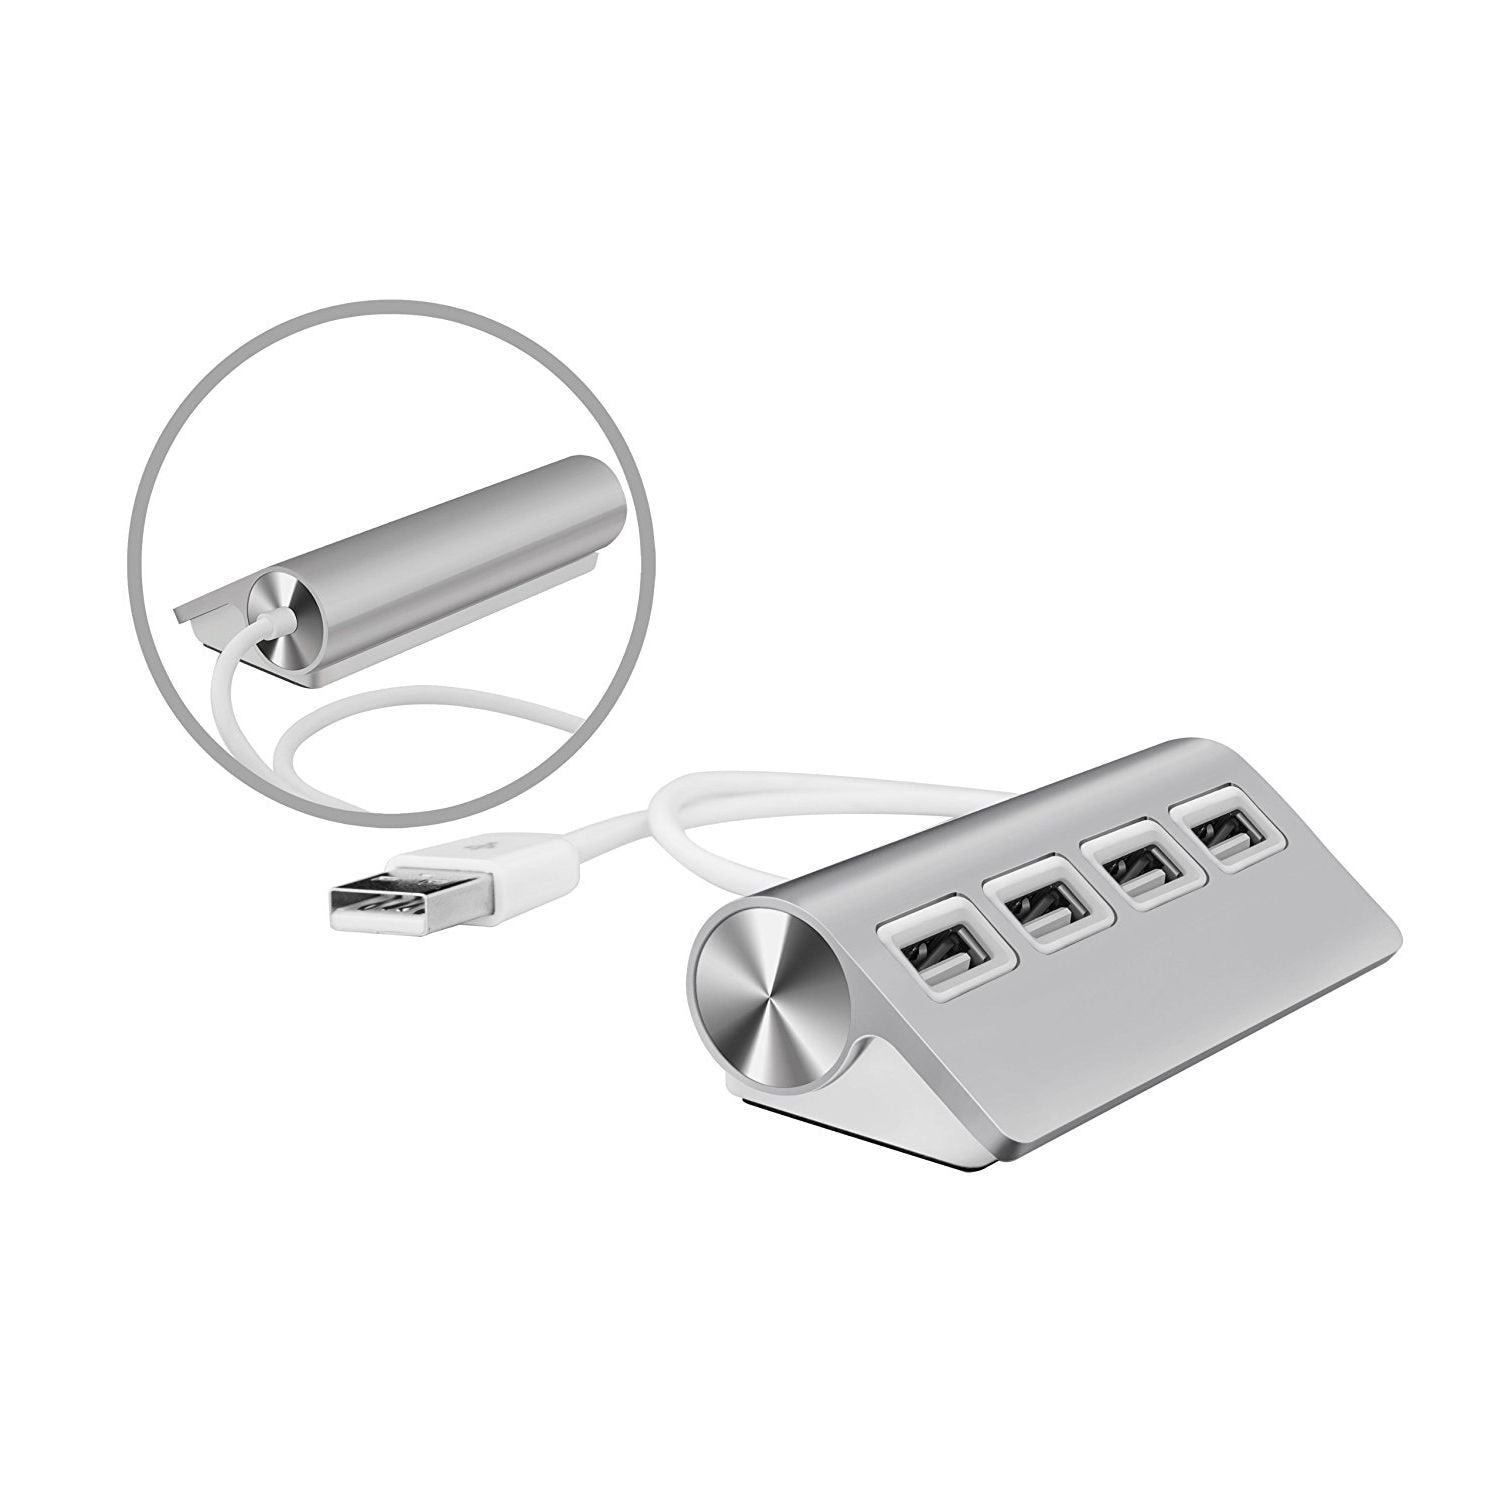 Premium Aluminum USB Port Hub